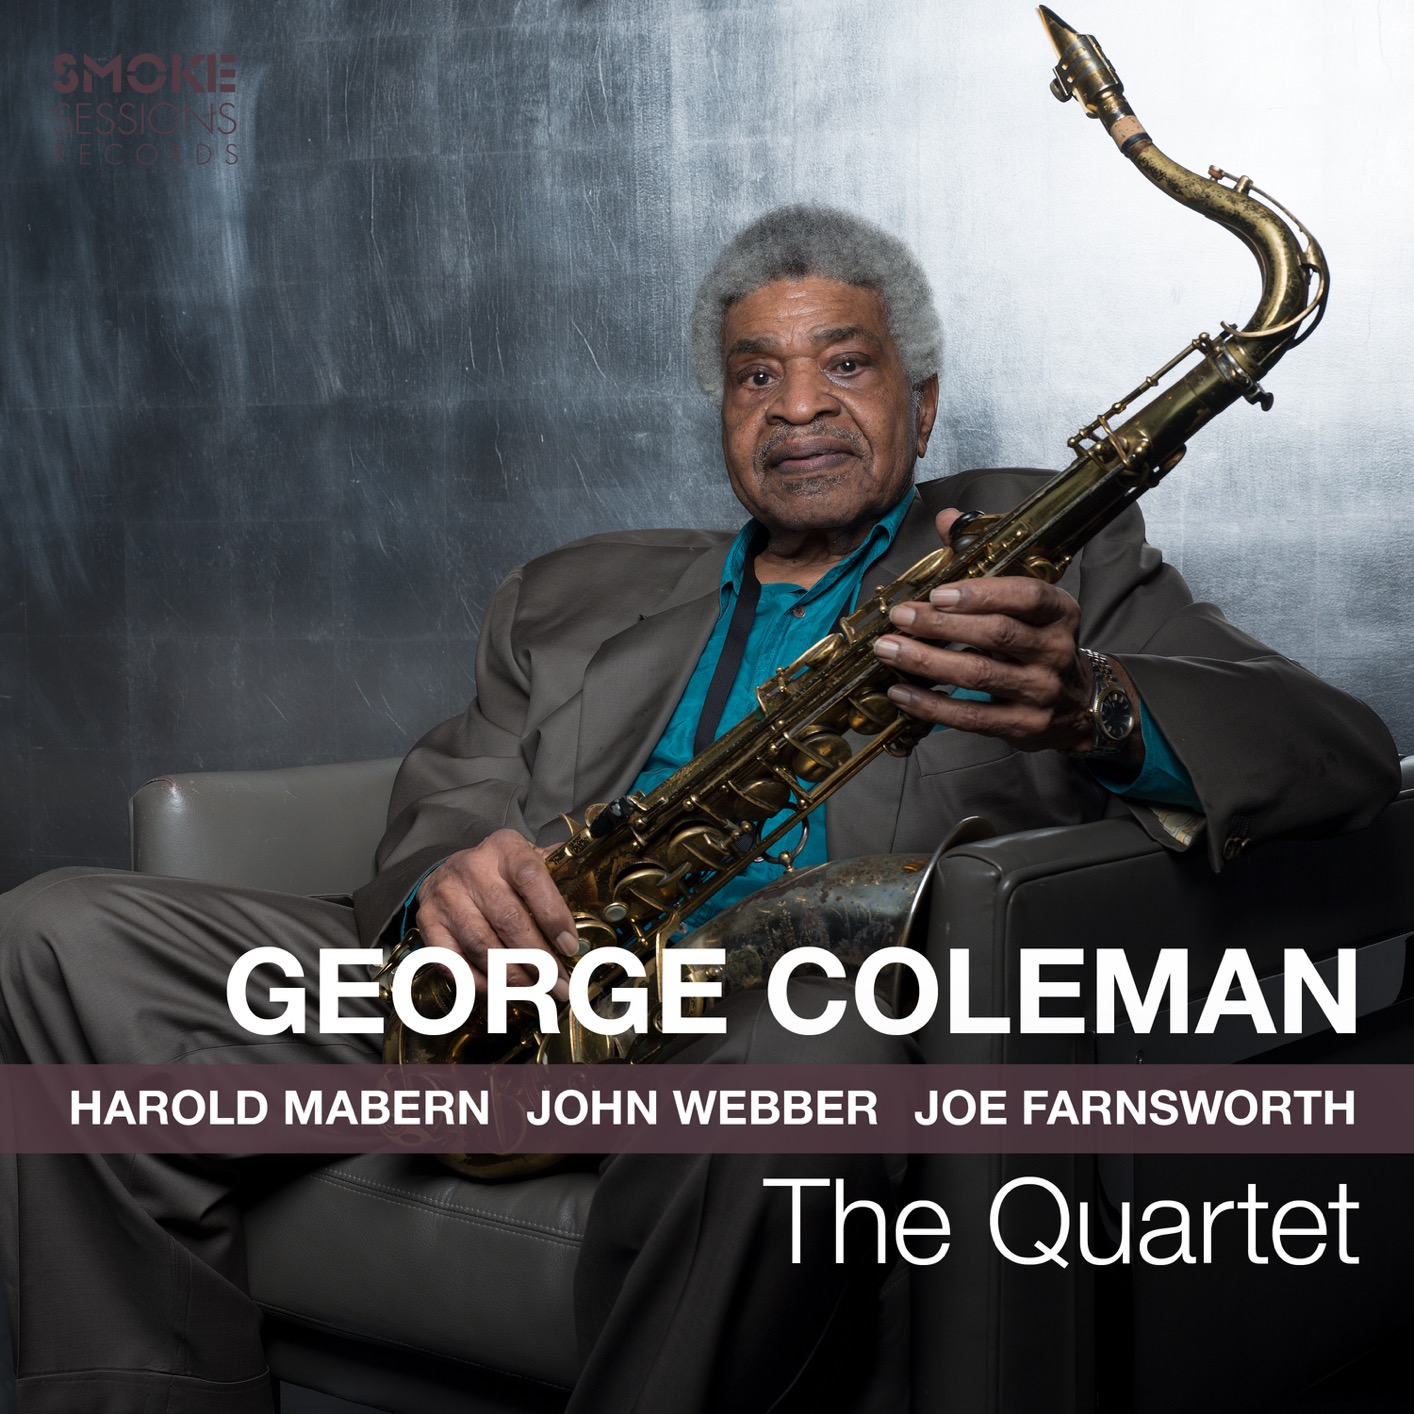 George Coleman - The Quartet (2019) [FLAC 24bit/96kHz]